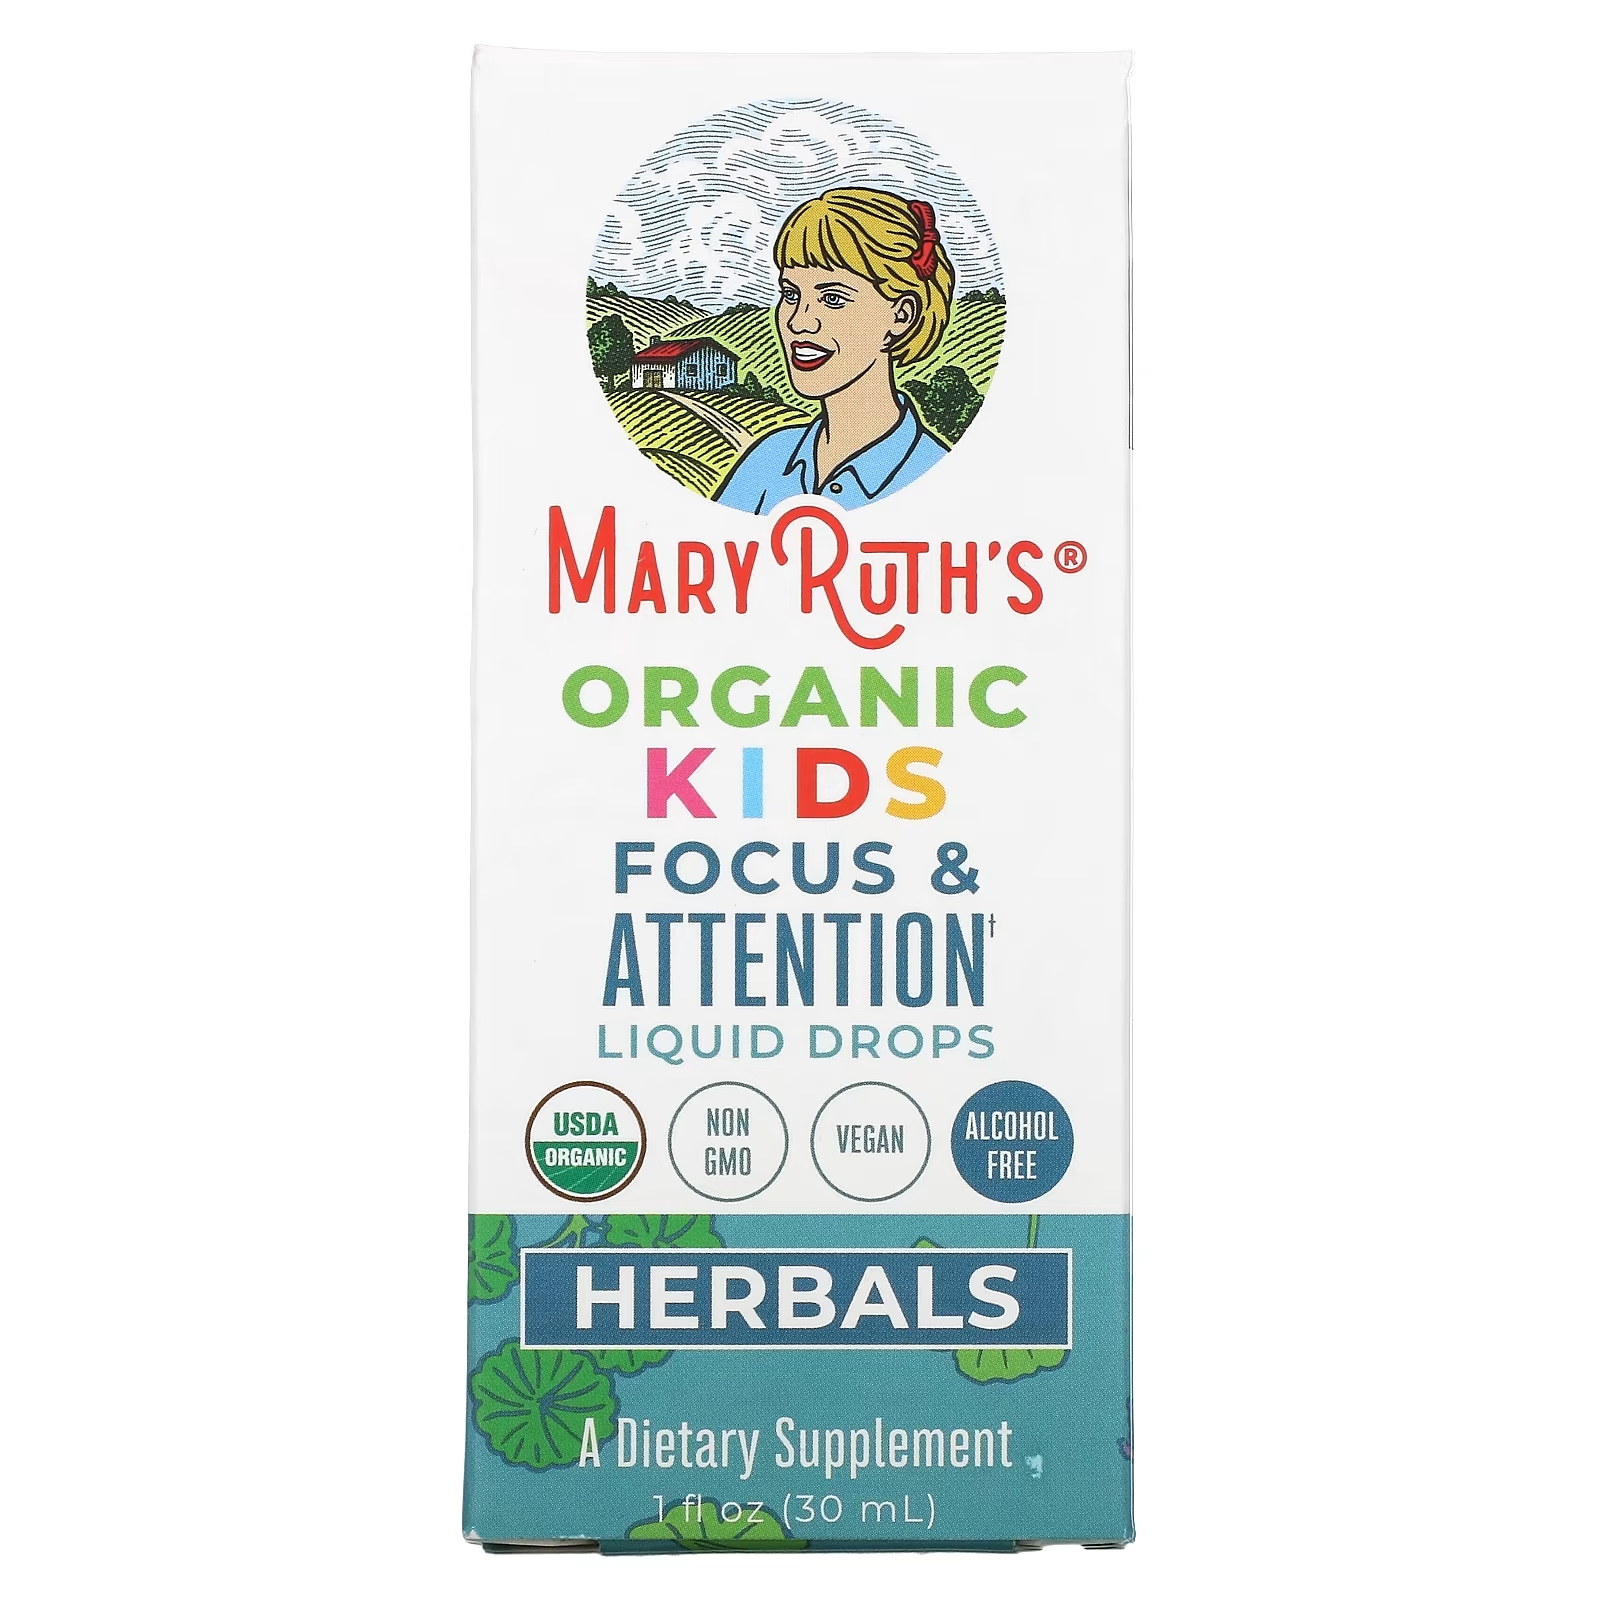 MaryRuth Organics Herbals Органические жидкие капли для детского внимания и внимания, 30 мл maryruth organics herbals жидкие капли для поддержки лимфатической системы без спирта 30 мл 1 жидк унция